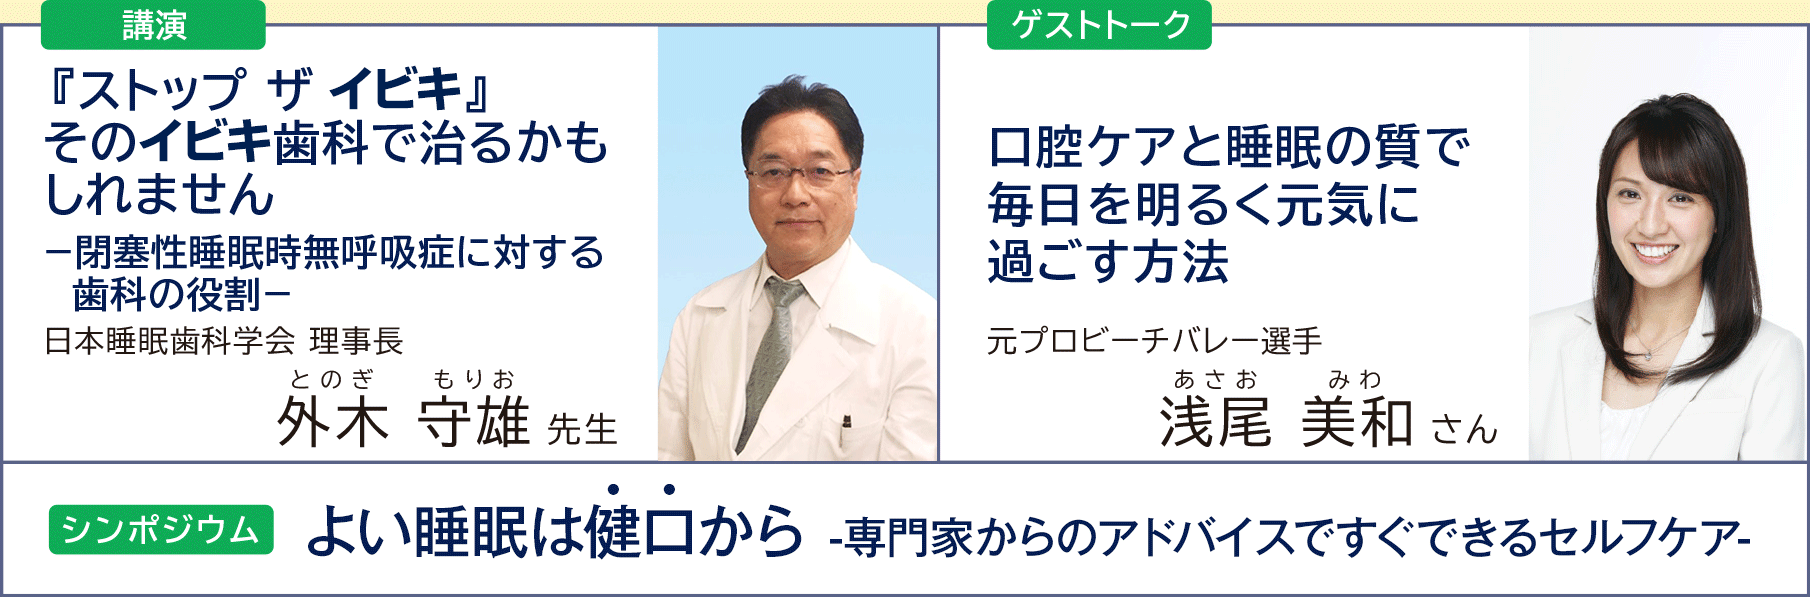 講演 外木守雄 先生 / ゲストトーク 浅尾美和 さん / シンポジウム よい睡眠は健口から-専門家のアドバイスですぐできるセルフケア-